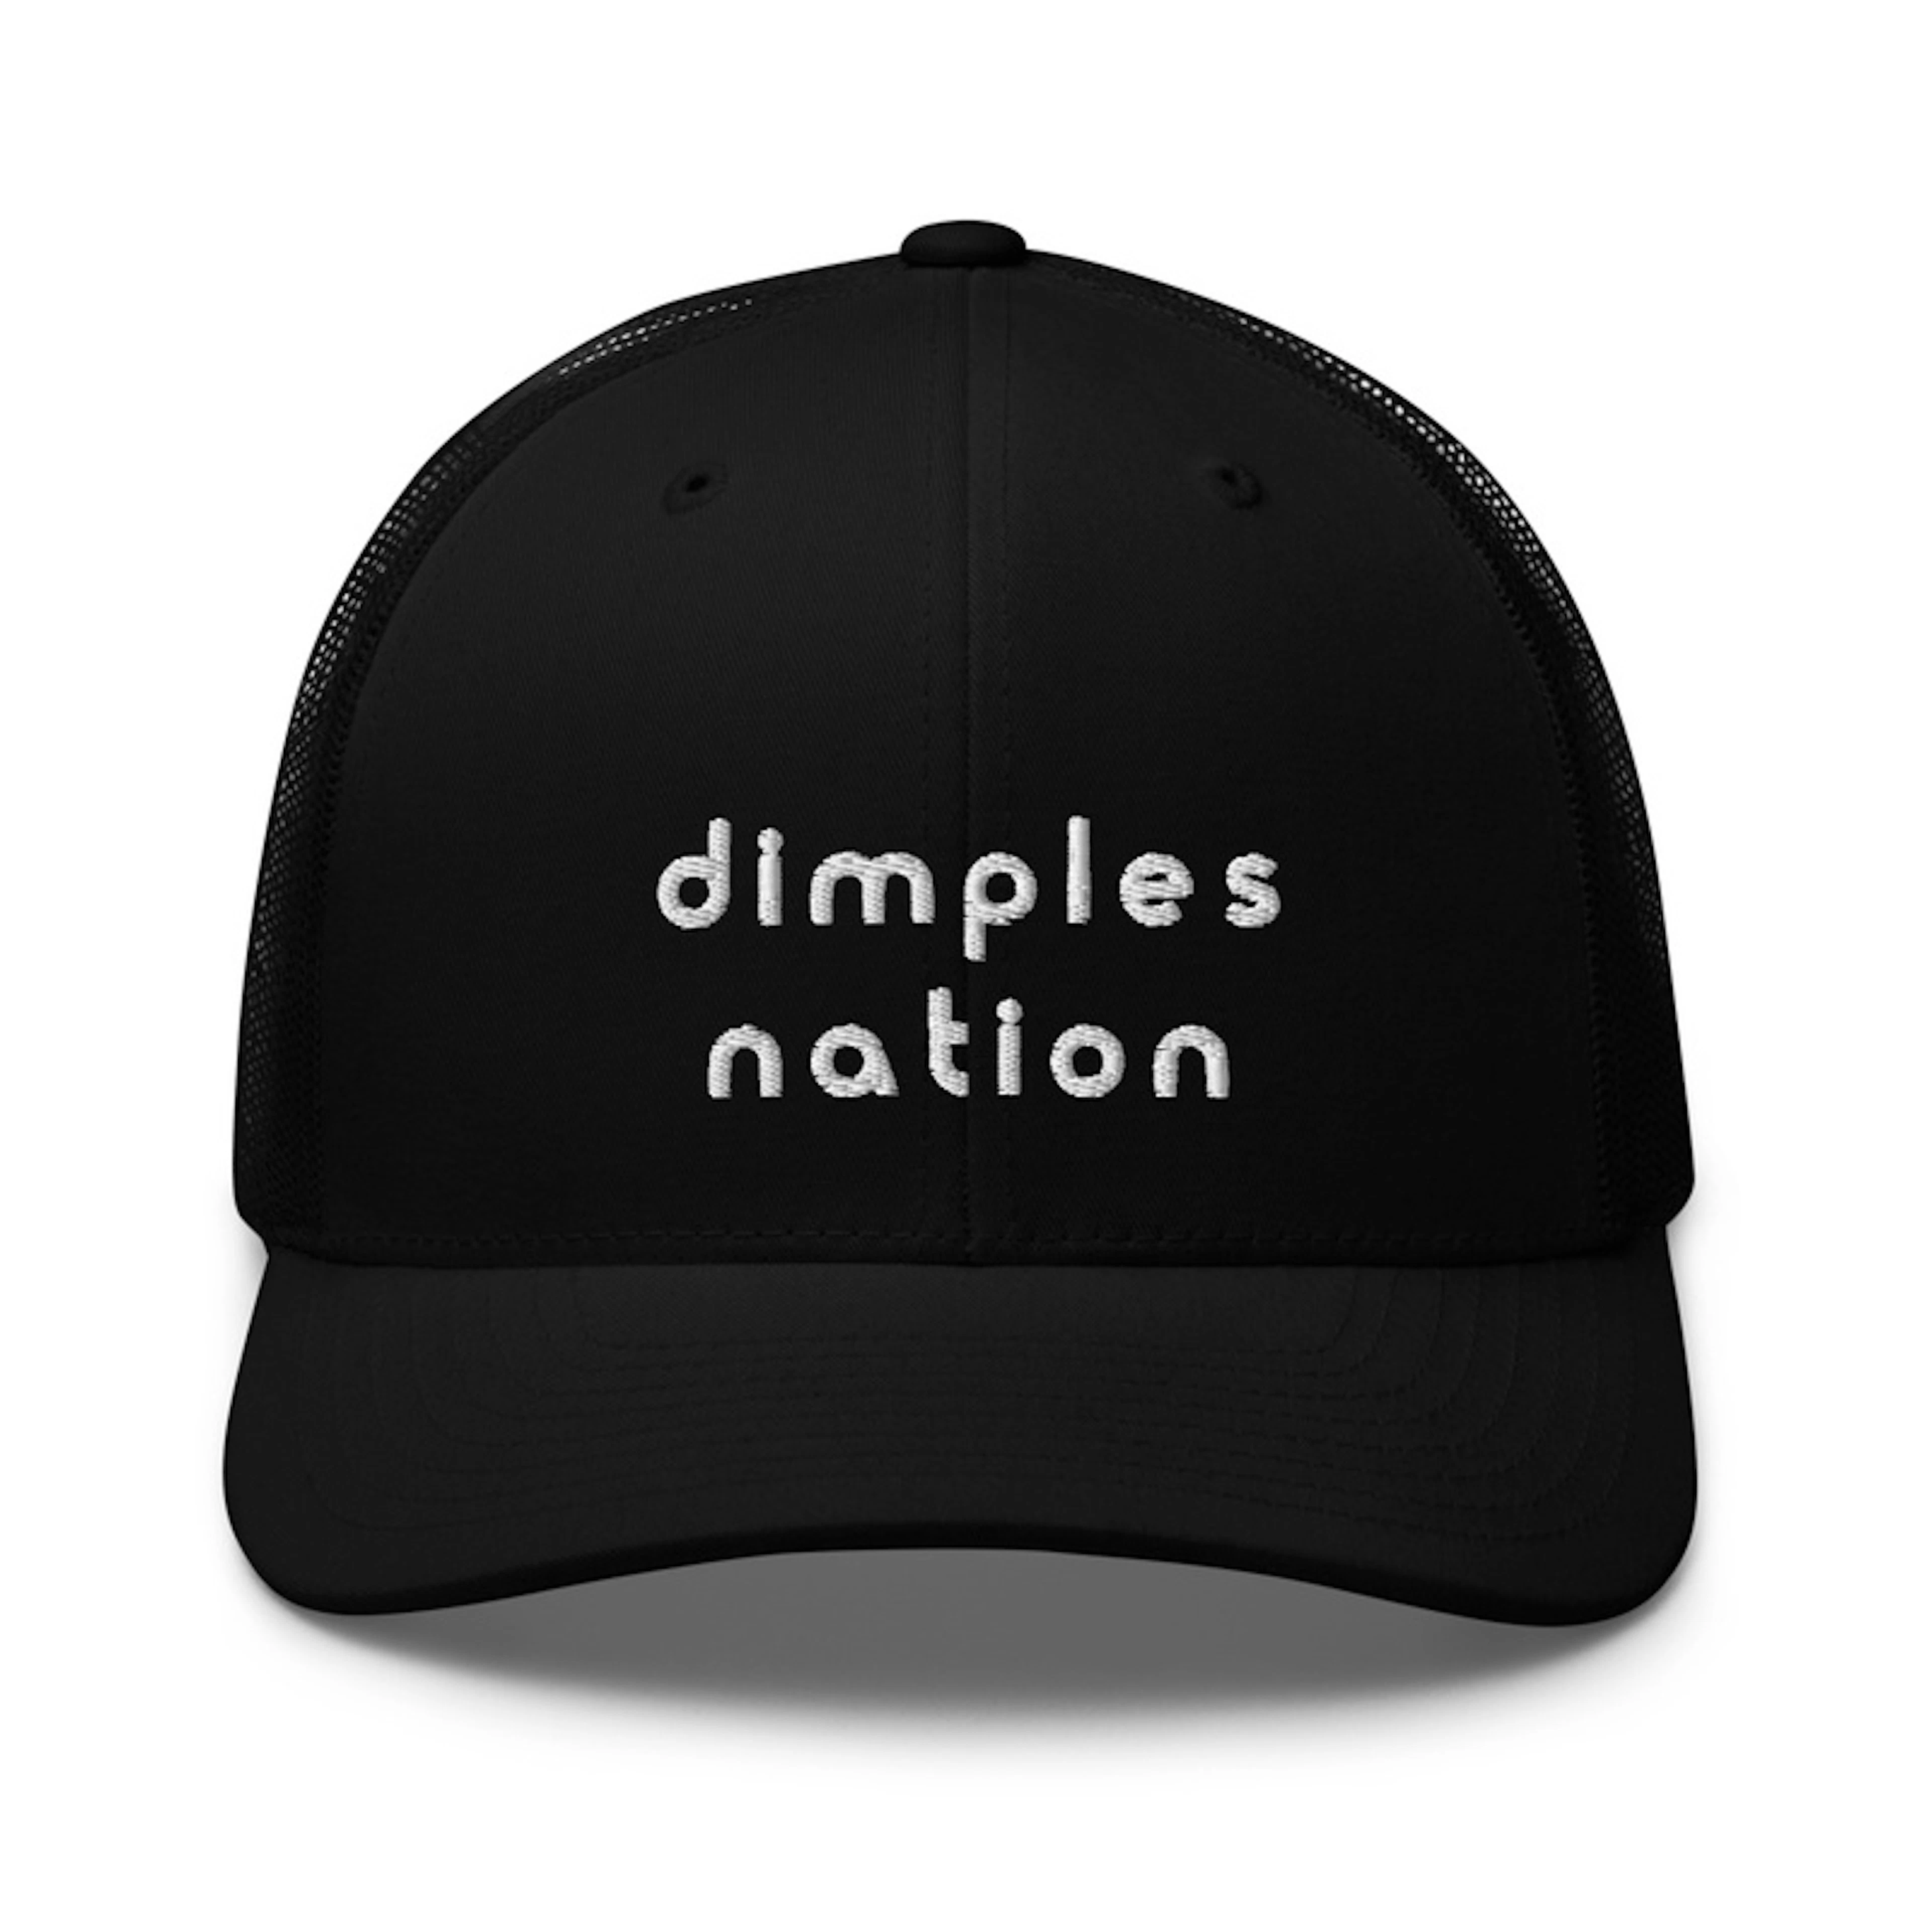 Dimples Nation Cap